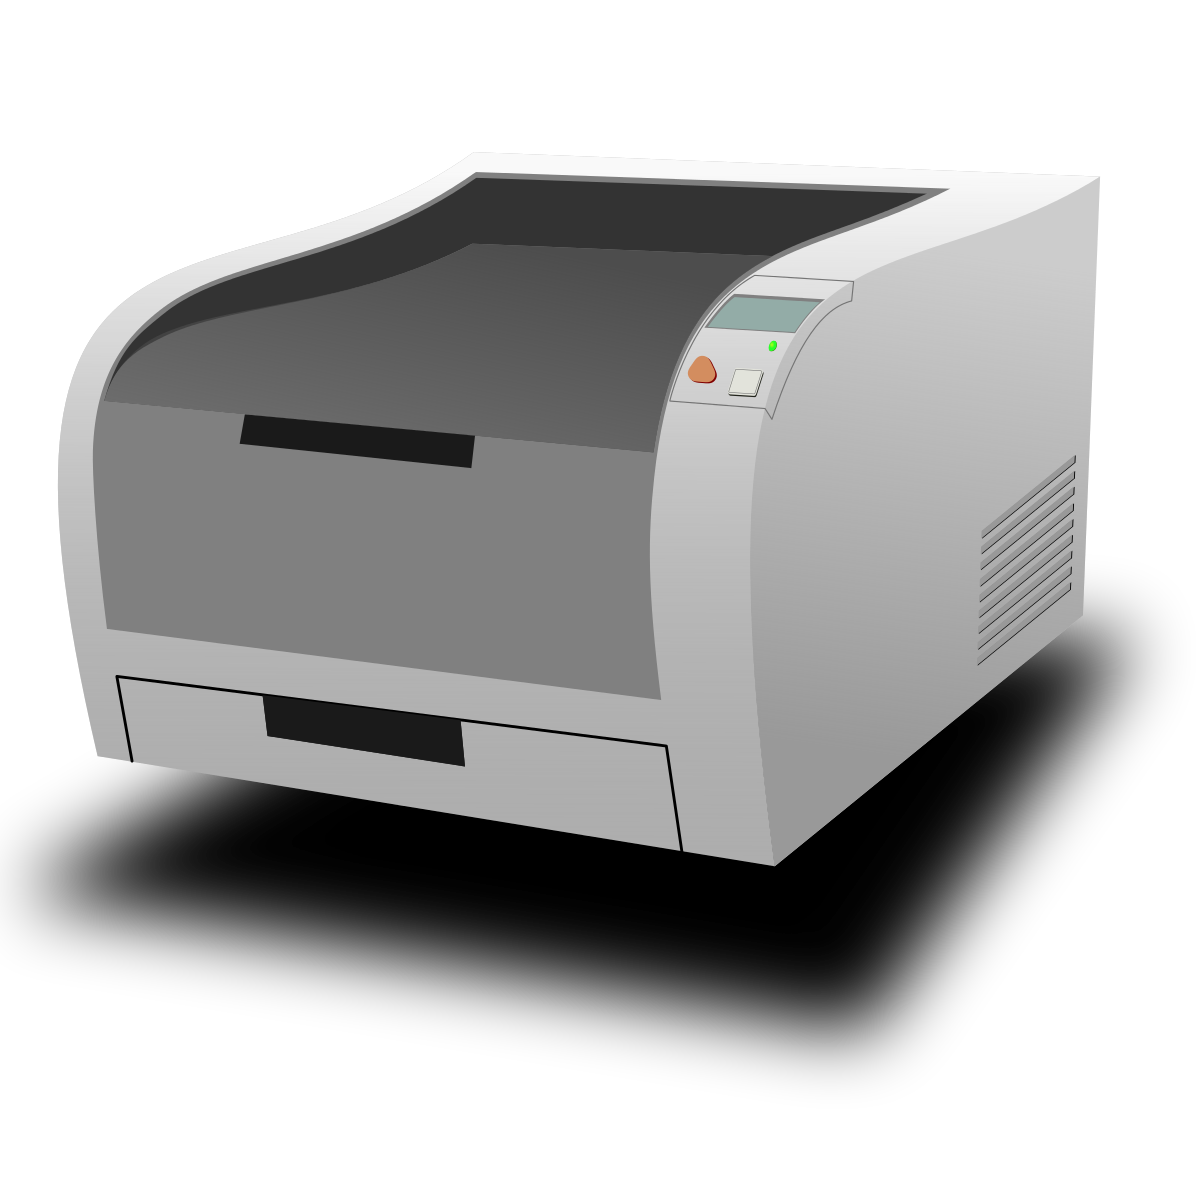 Принтер на черном фоне. Принтер лазерный вектор. Принтер лазерный Lazer Set 1320. Принтер лазерный ксерокс 7435. Лазерный принтер презентация.